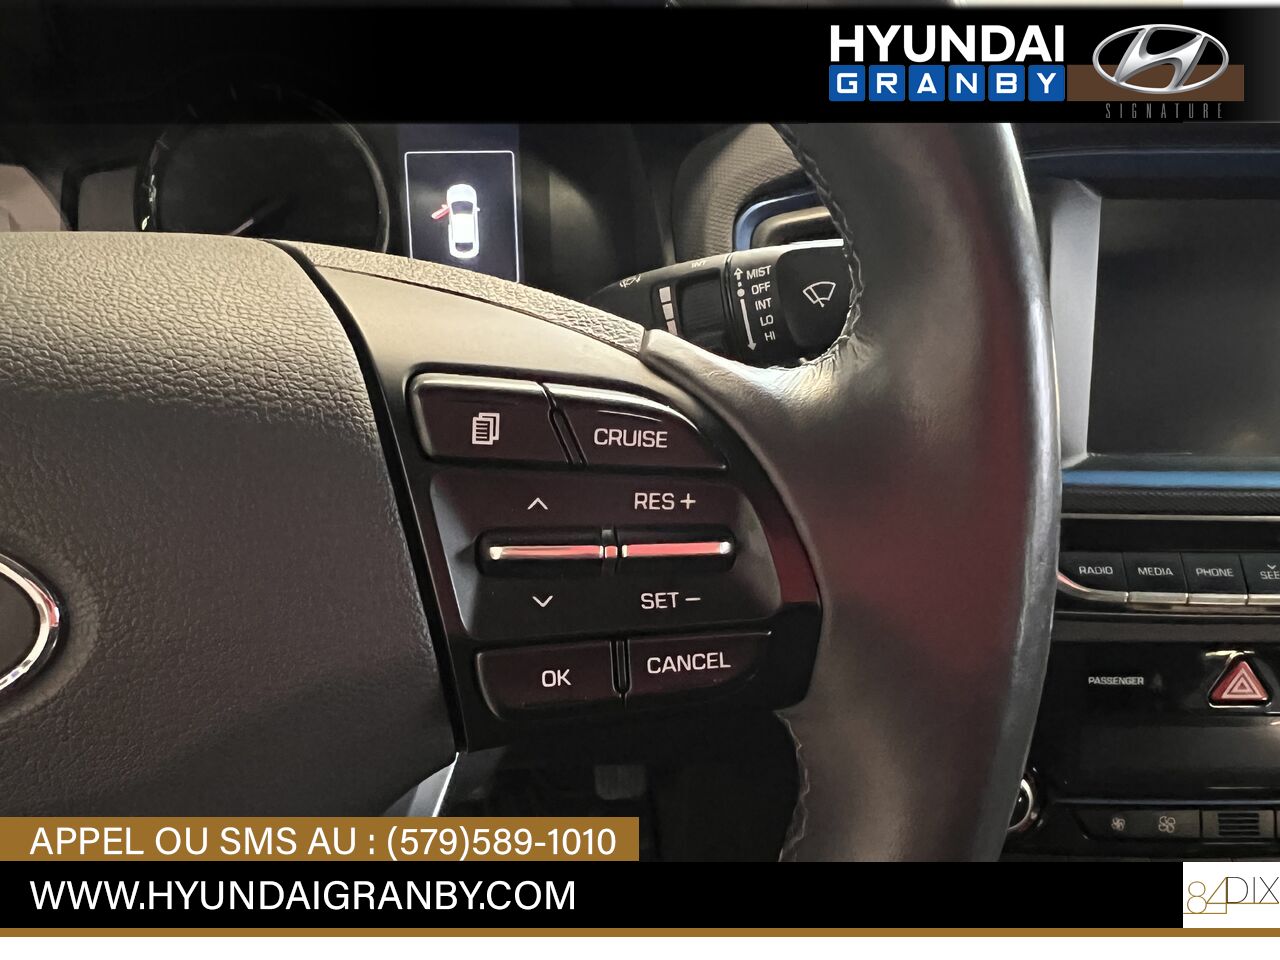 2017 Hyundai Ioniq hybride Granby - photo #16